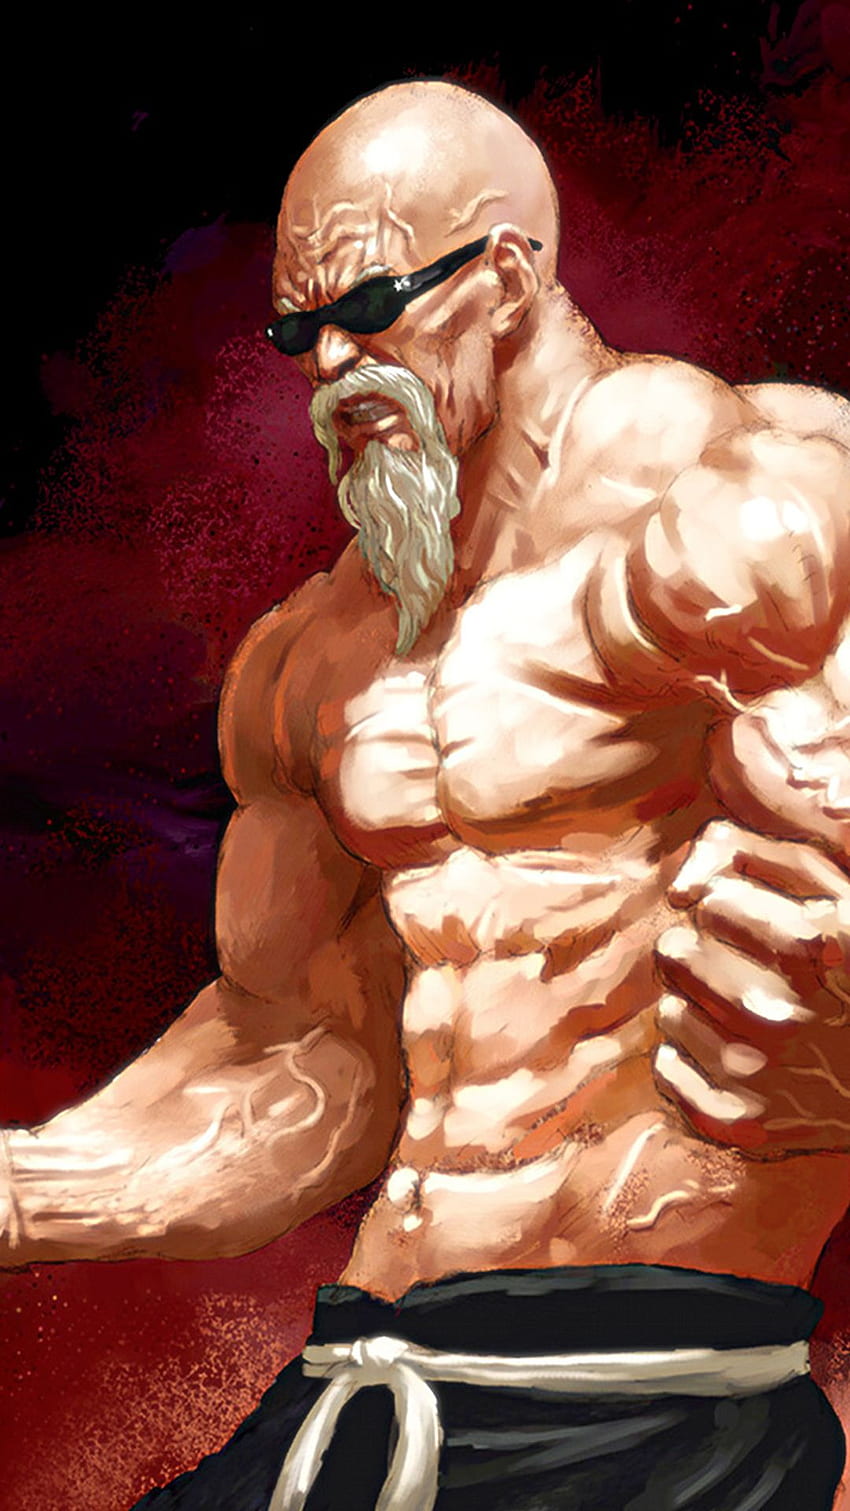 Cartoon bodybuilding HD wallpapers | Pxfuel